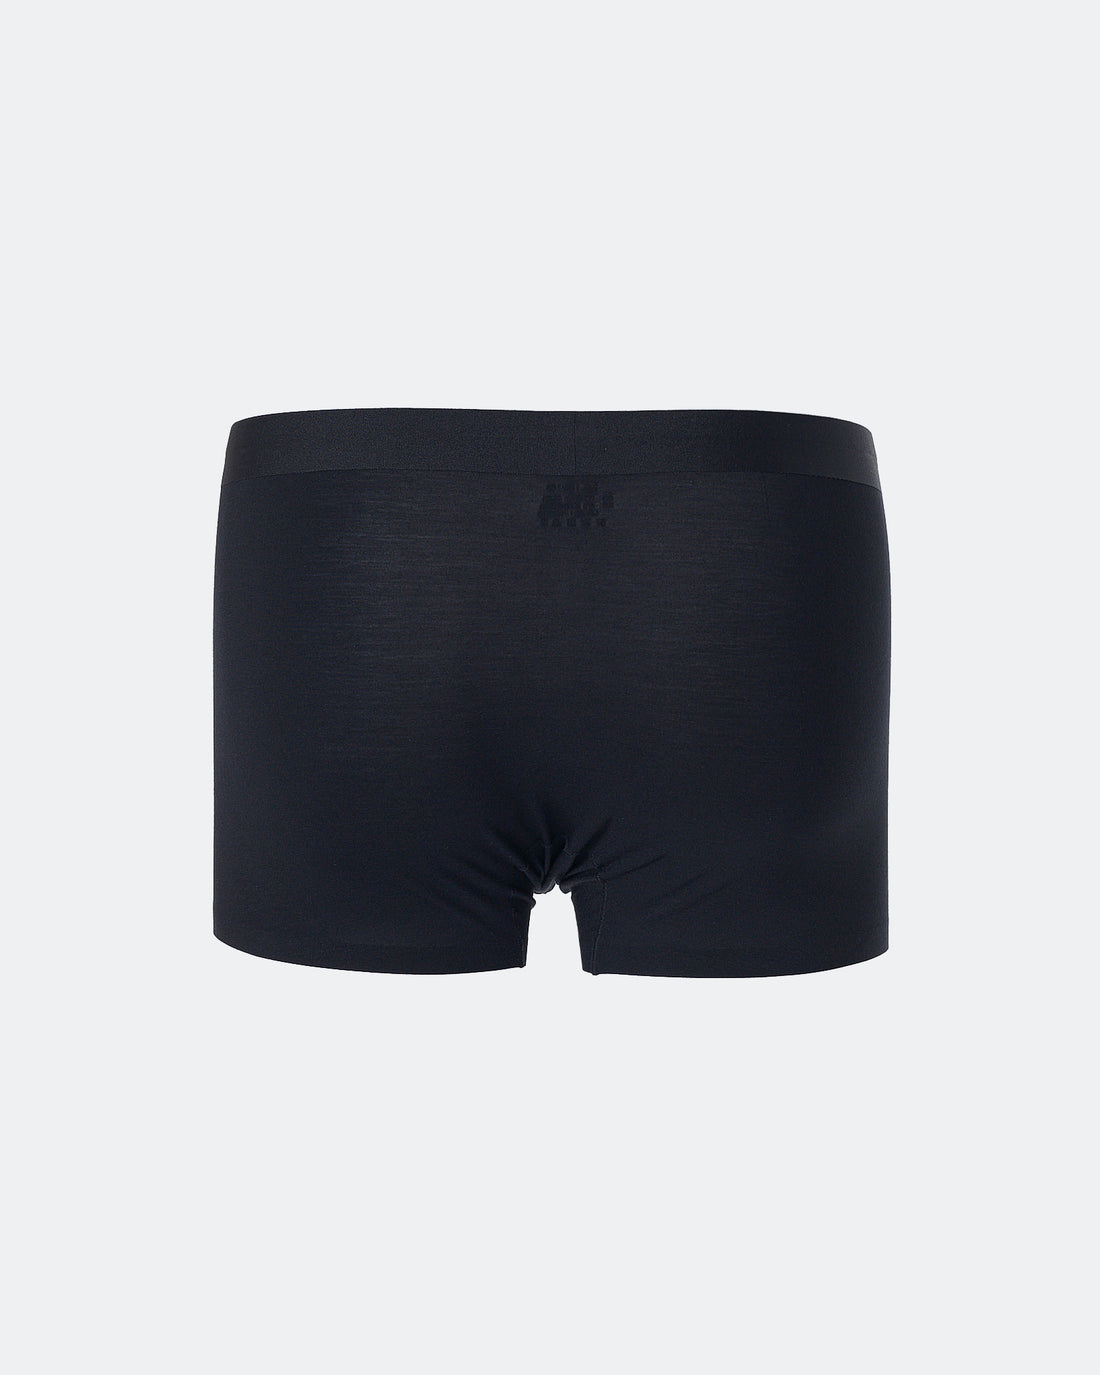 CK Plain Color Men Black Underwear 6.90